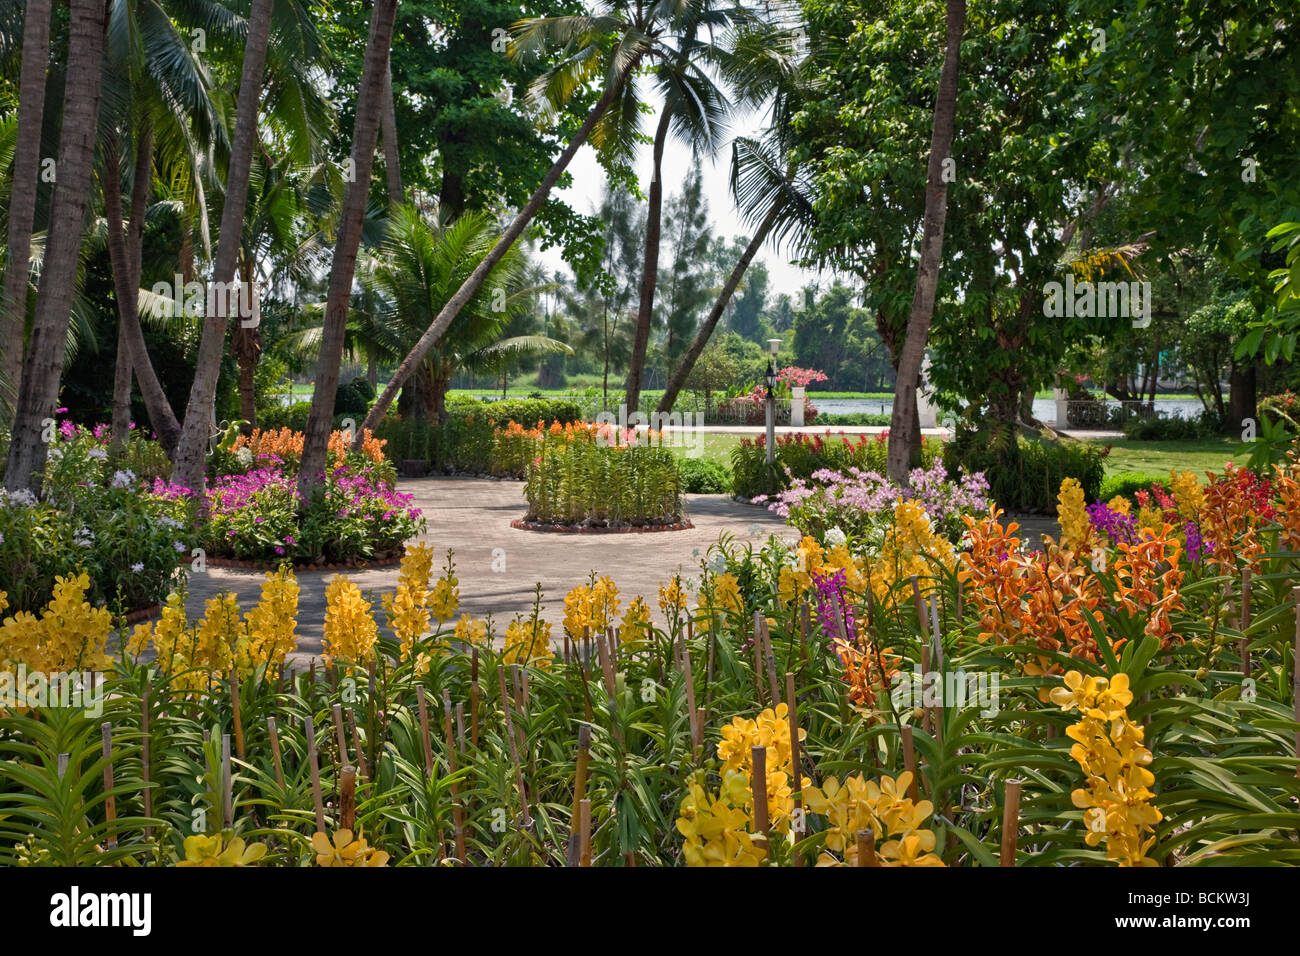 La Thaïlande. Une exposition magnifique d'orchidées au jardin de roses un complexe touristique situé dans 75 acres de jardins magnifiques. Banque D'Images